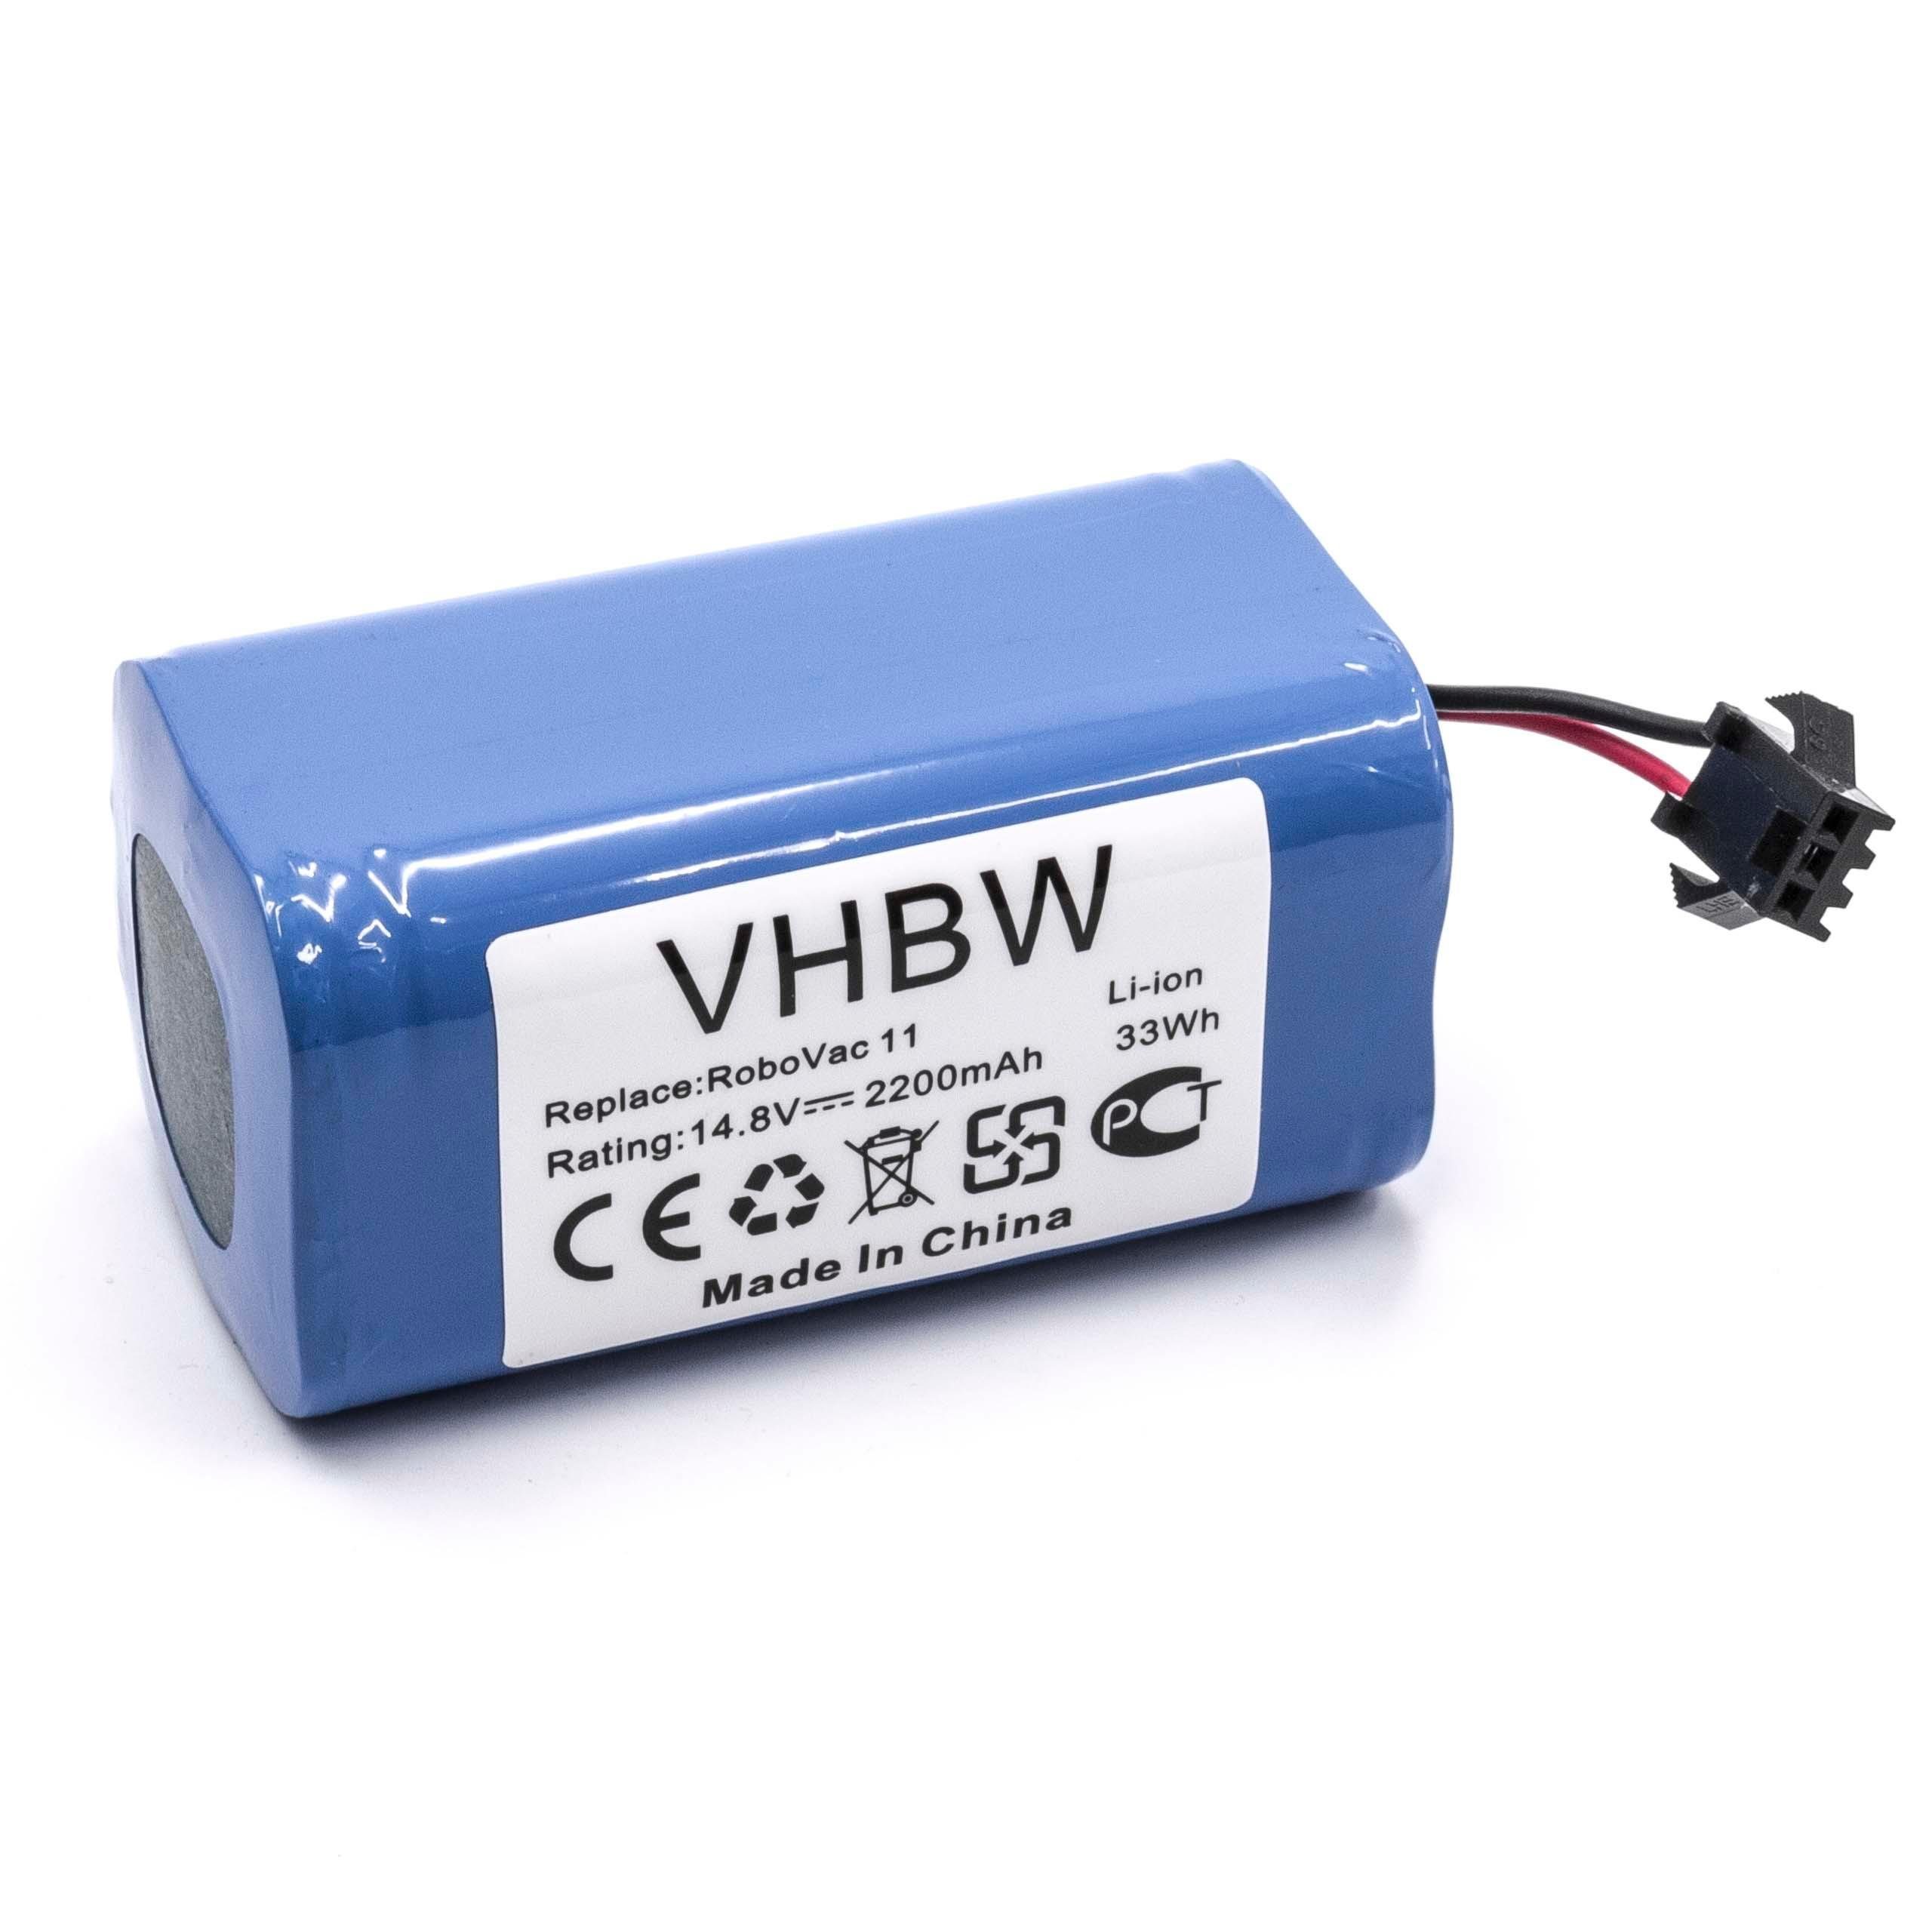 vhbw kompatibel mit Proscenic, 850T 2200 V) (14,8 mAh Li-Ion Staubsauger-Akku